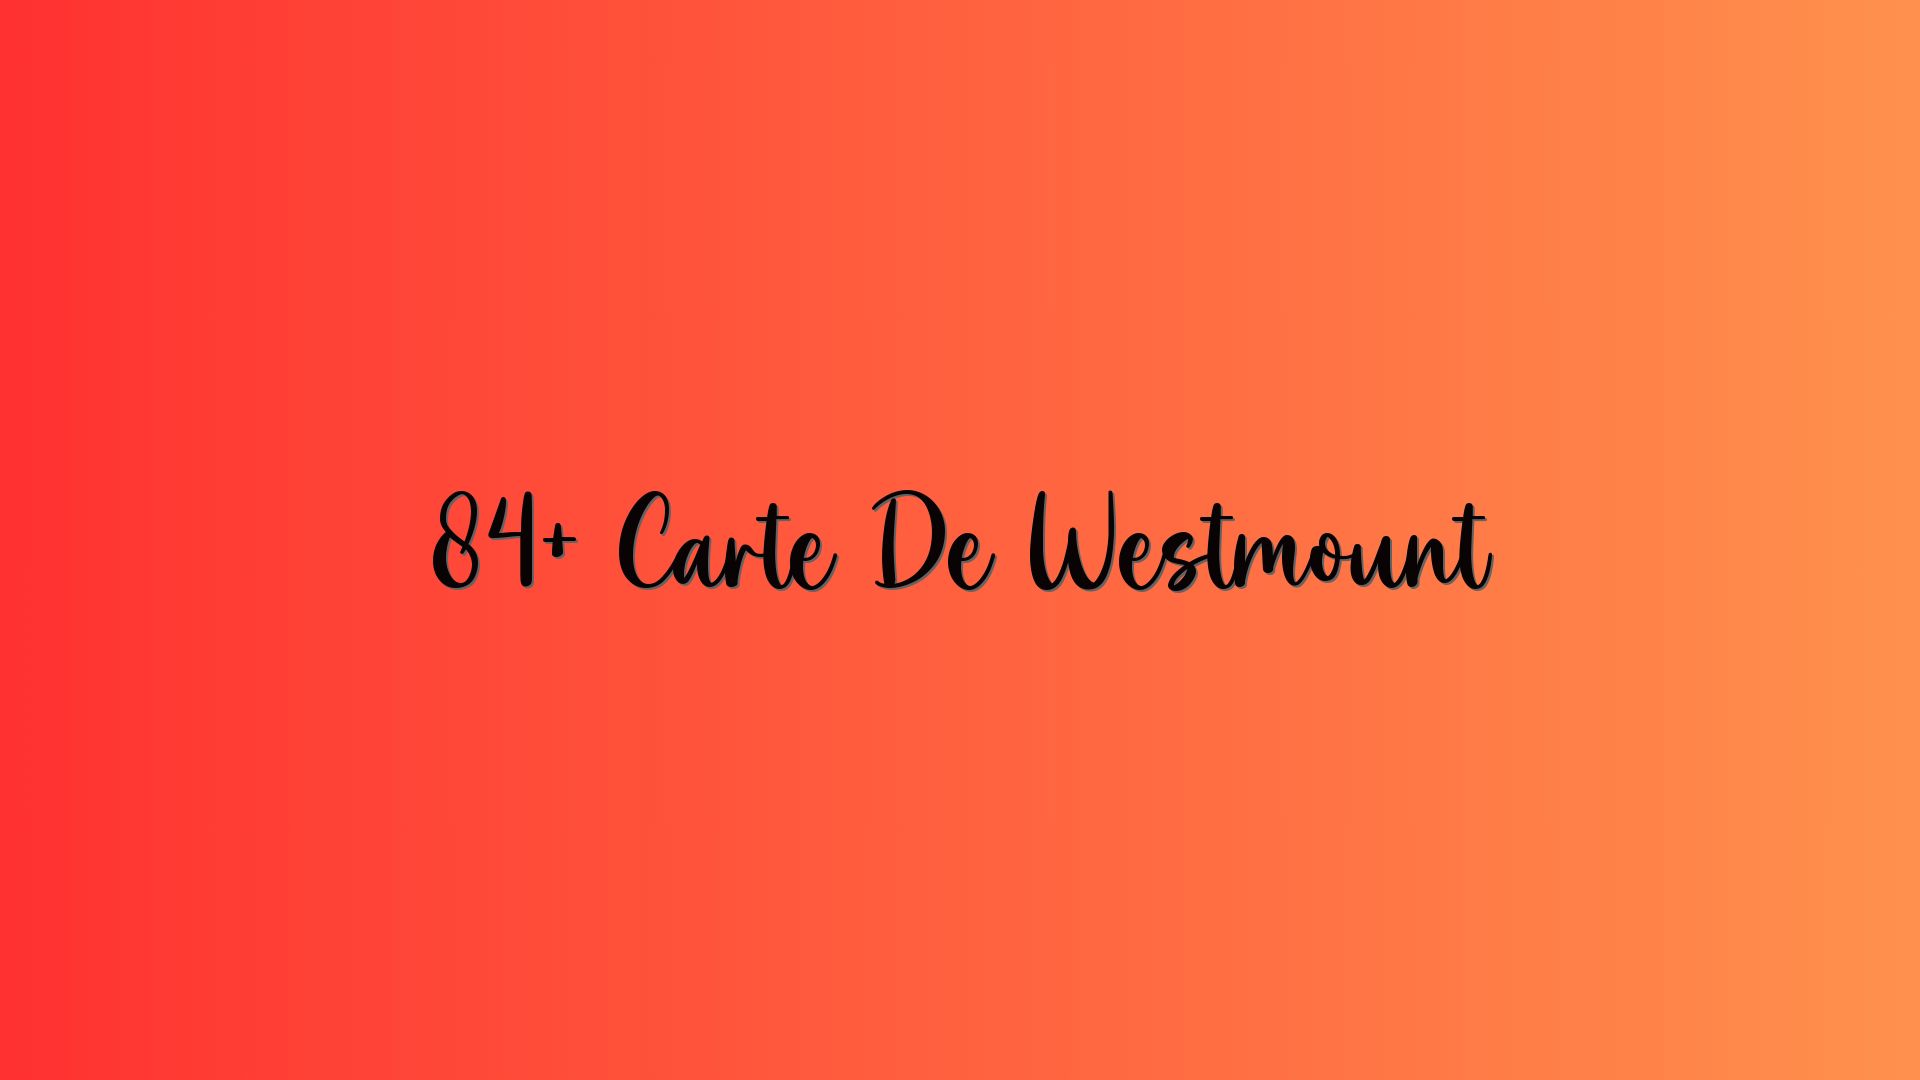 84+ Carte De Westmount